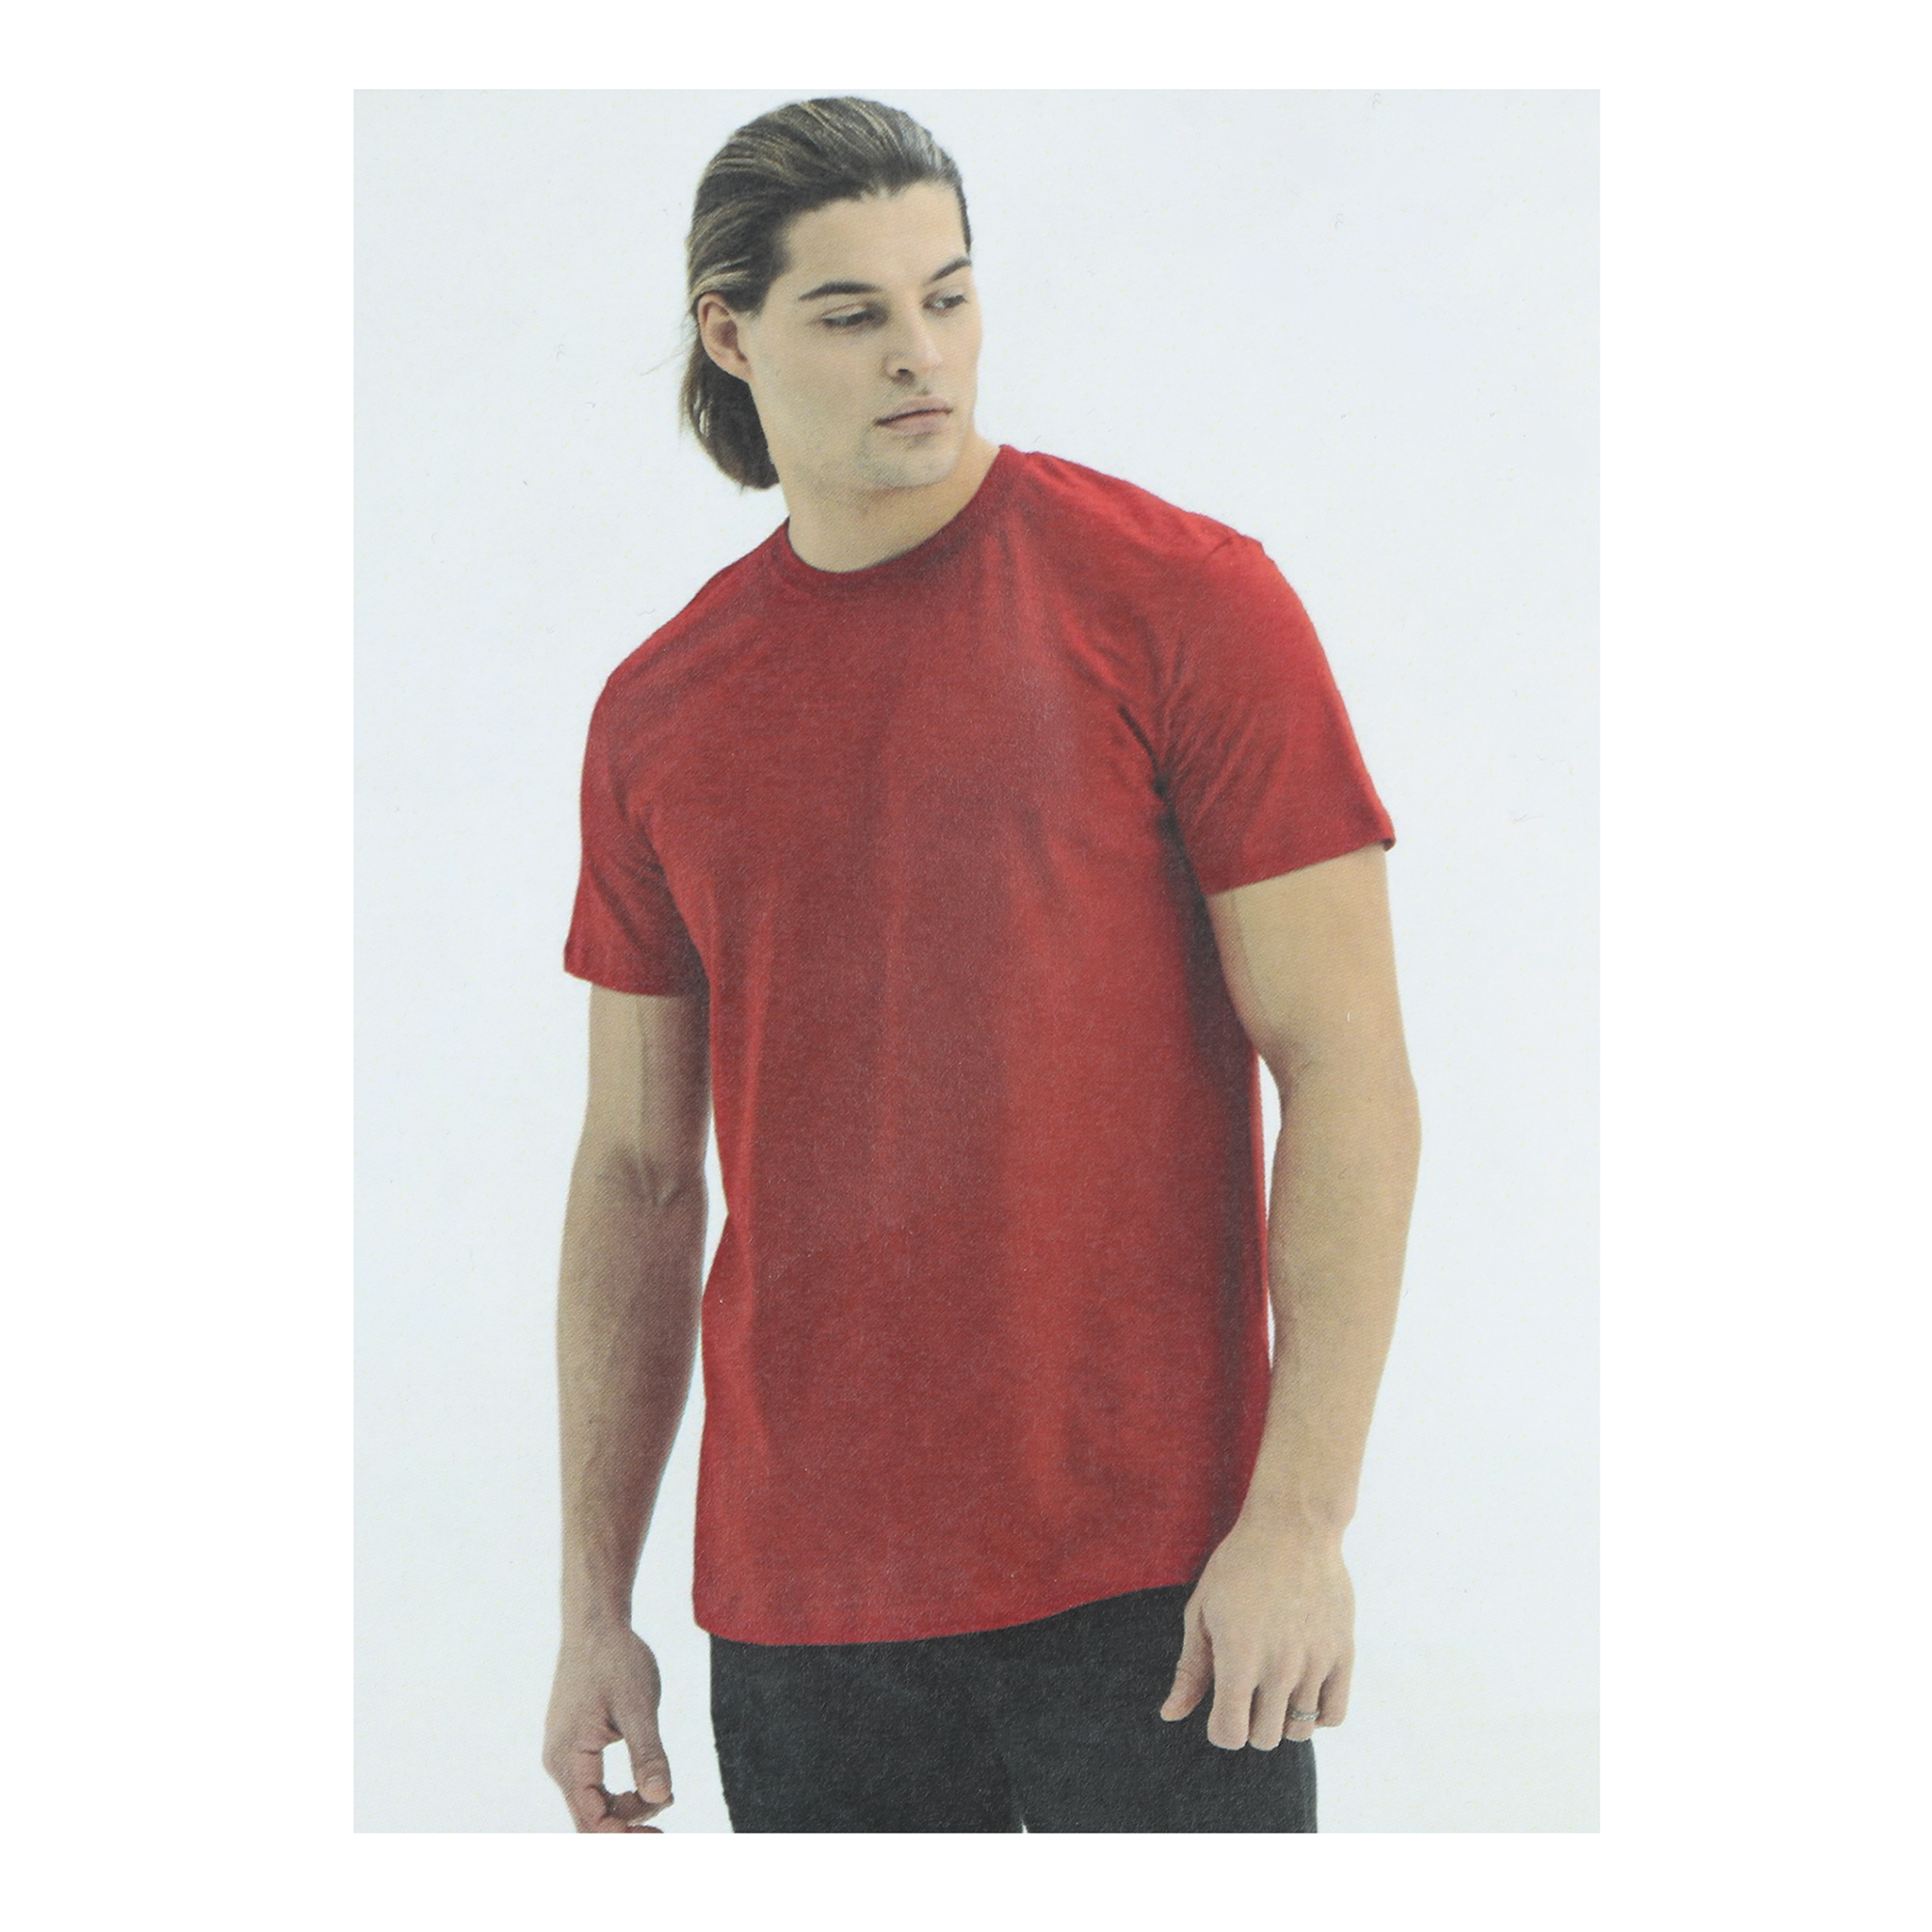 Мужская футболка Pantelemone MF-913 54 красная, цвет красный, размер 54 - фото 5